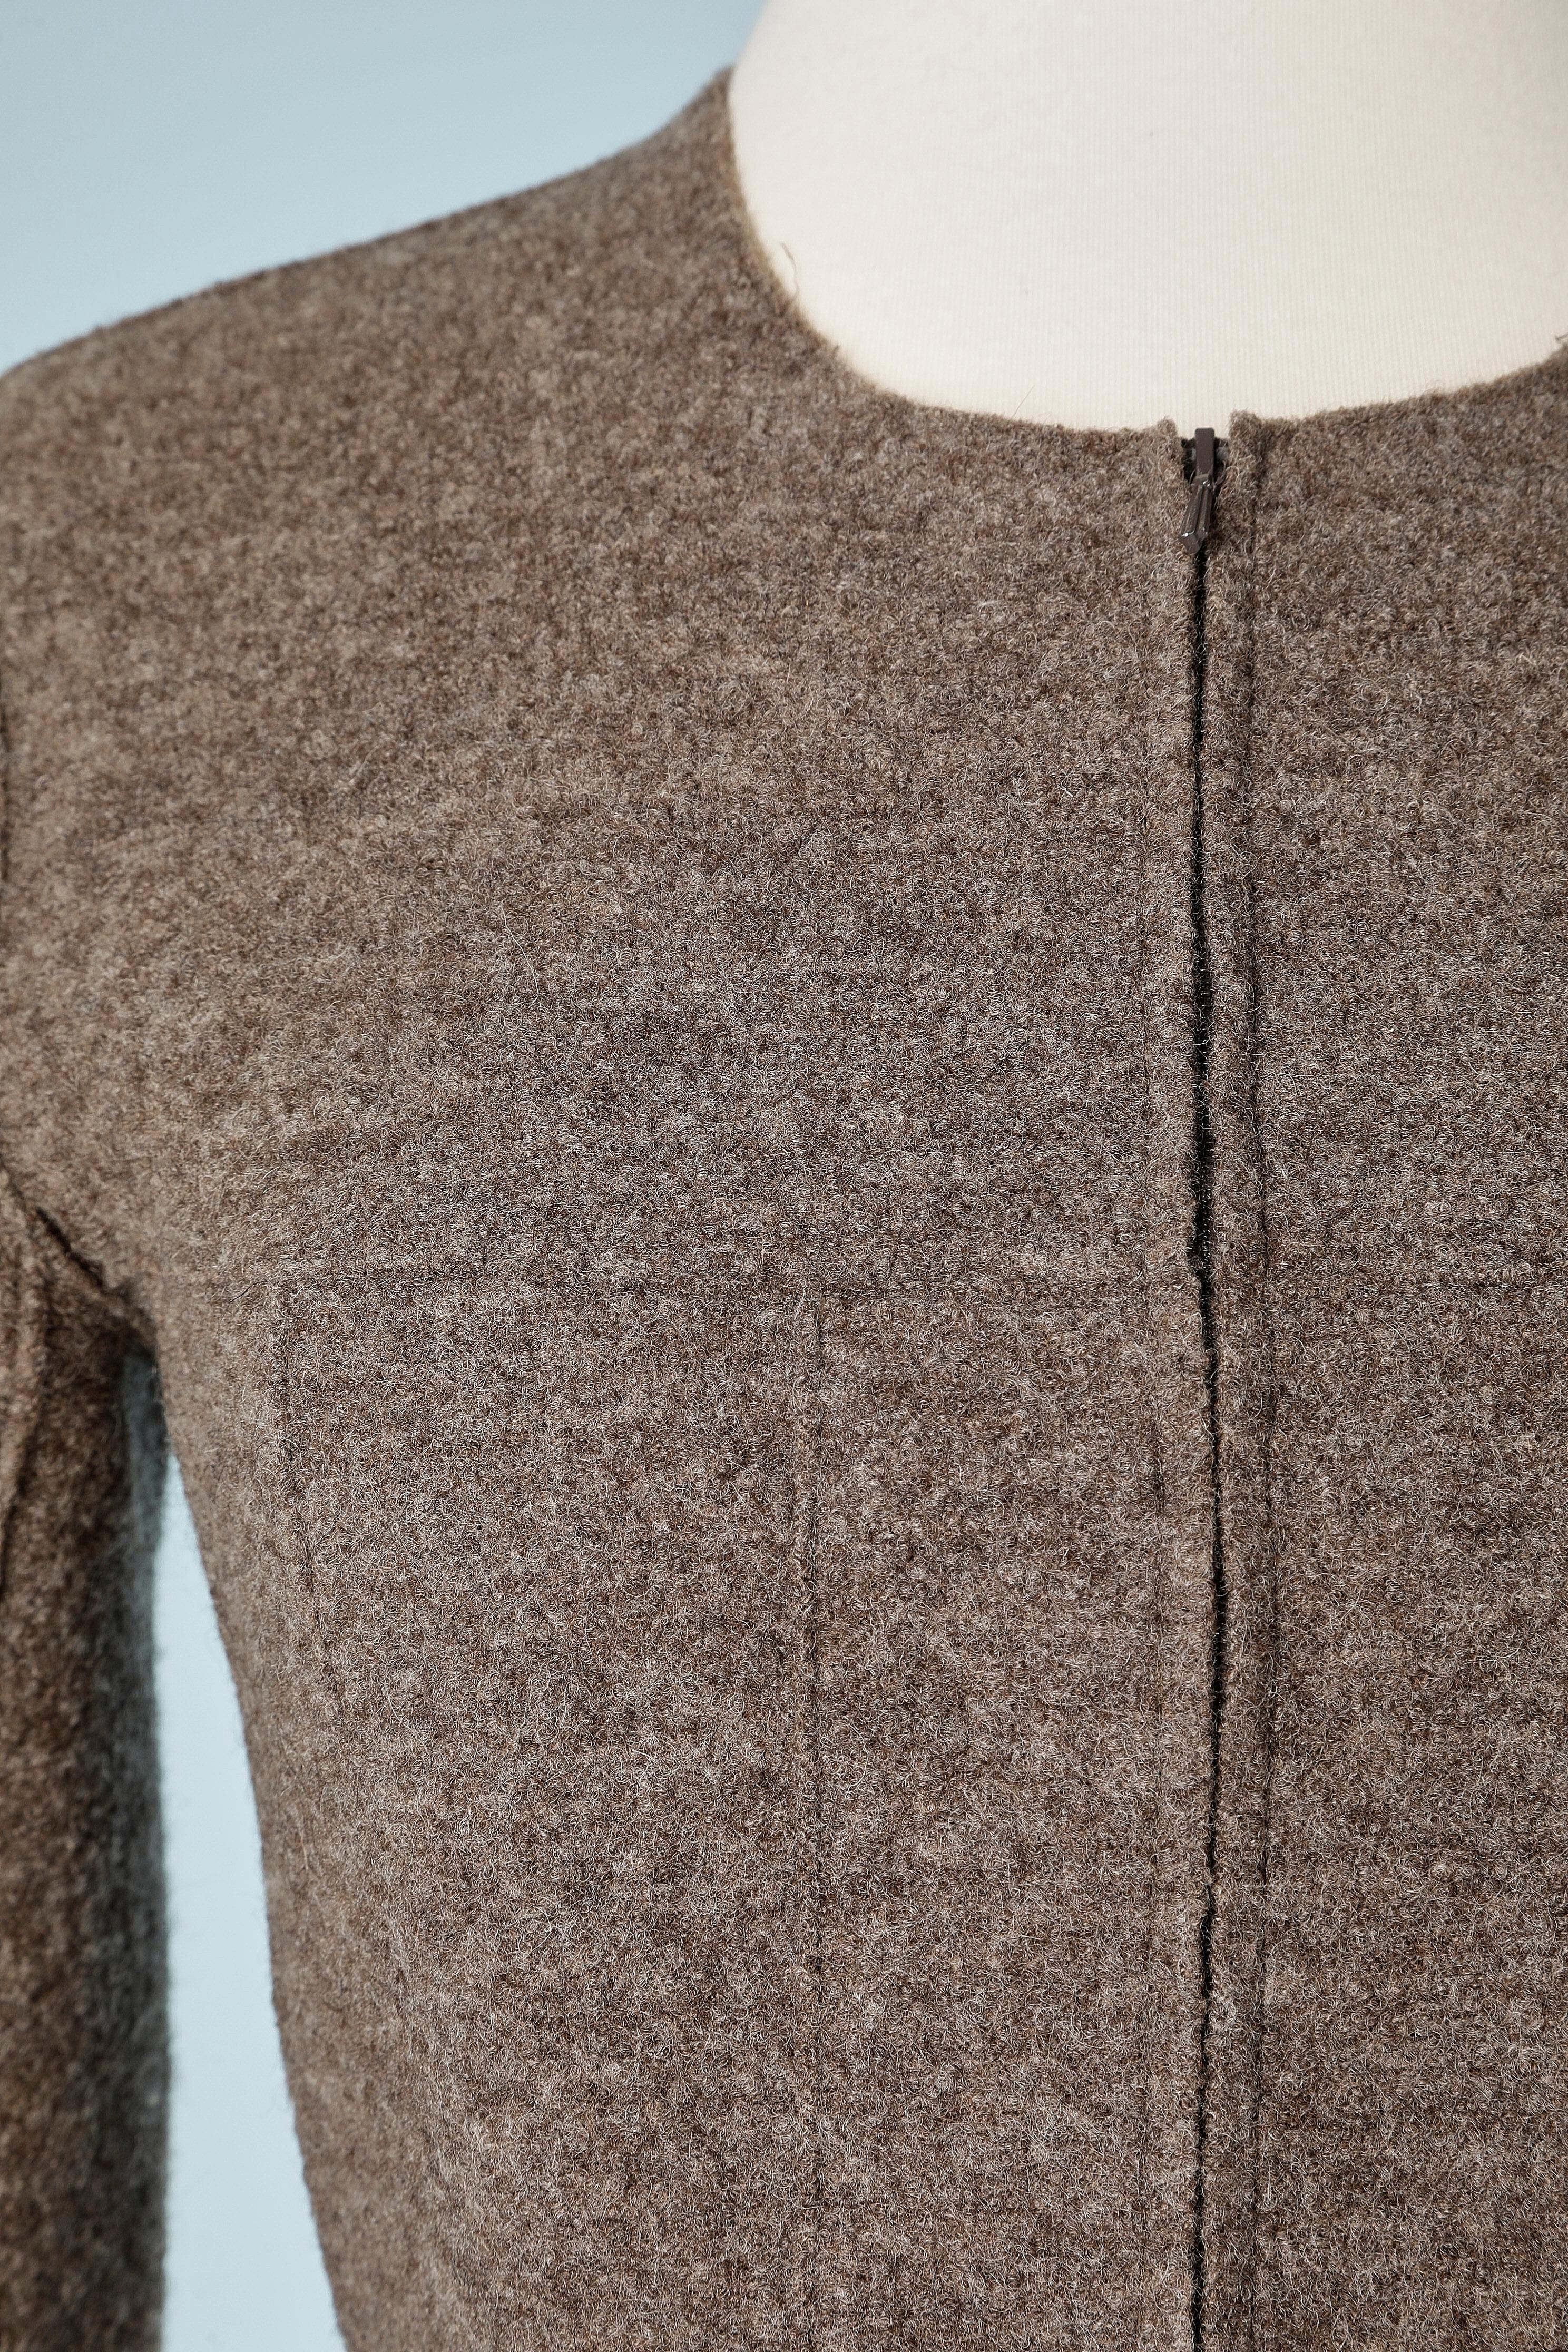 Veste en laine bouillie marron avec fermeture éclair. Pas de doublure. 
Chaîne métallique à l'intérieur de la veste dans le bas. Fente dans le bas de la manche, longueur= 6 cm 
TAILLE S 